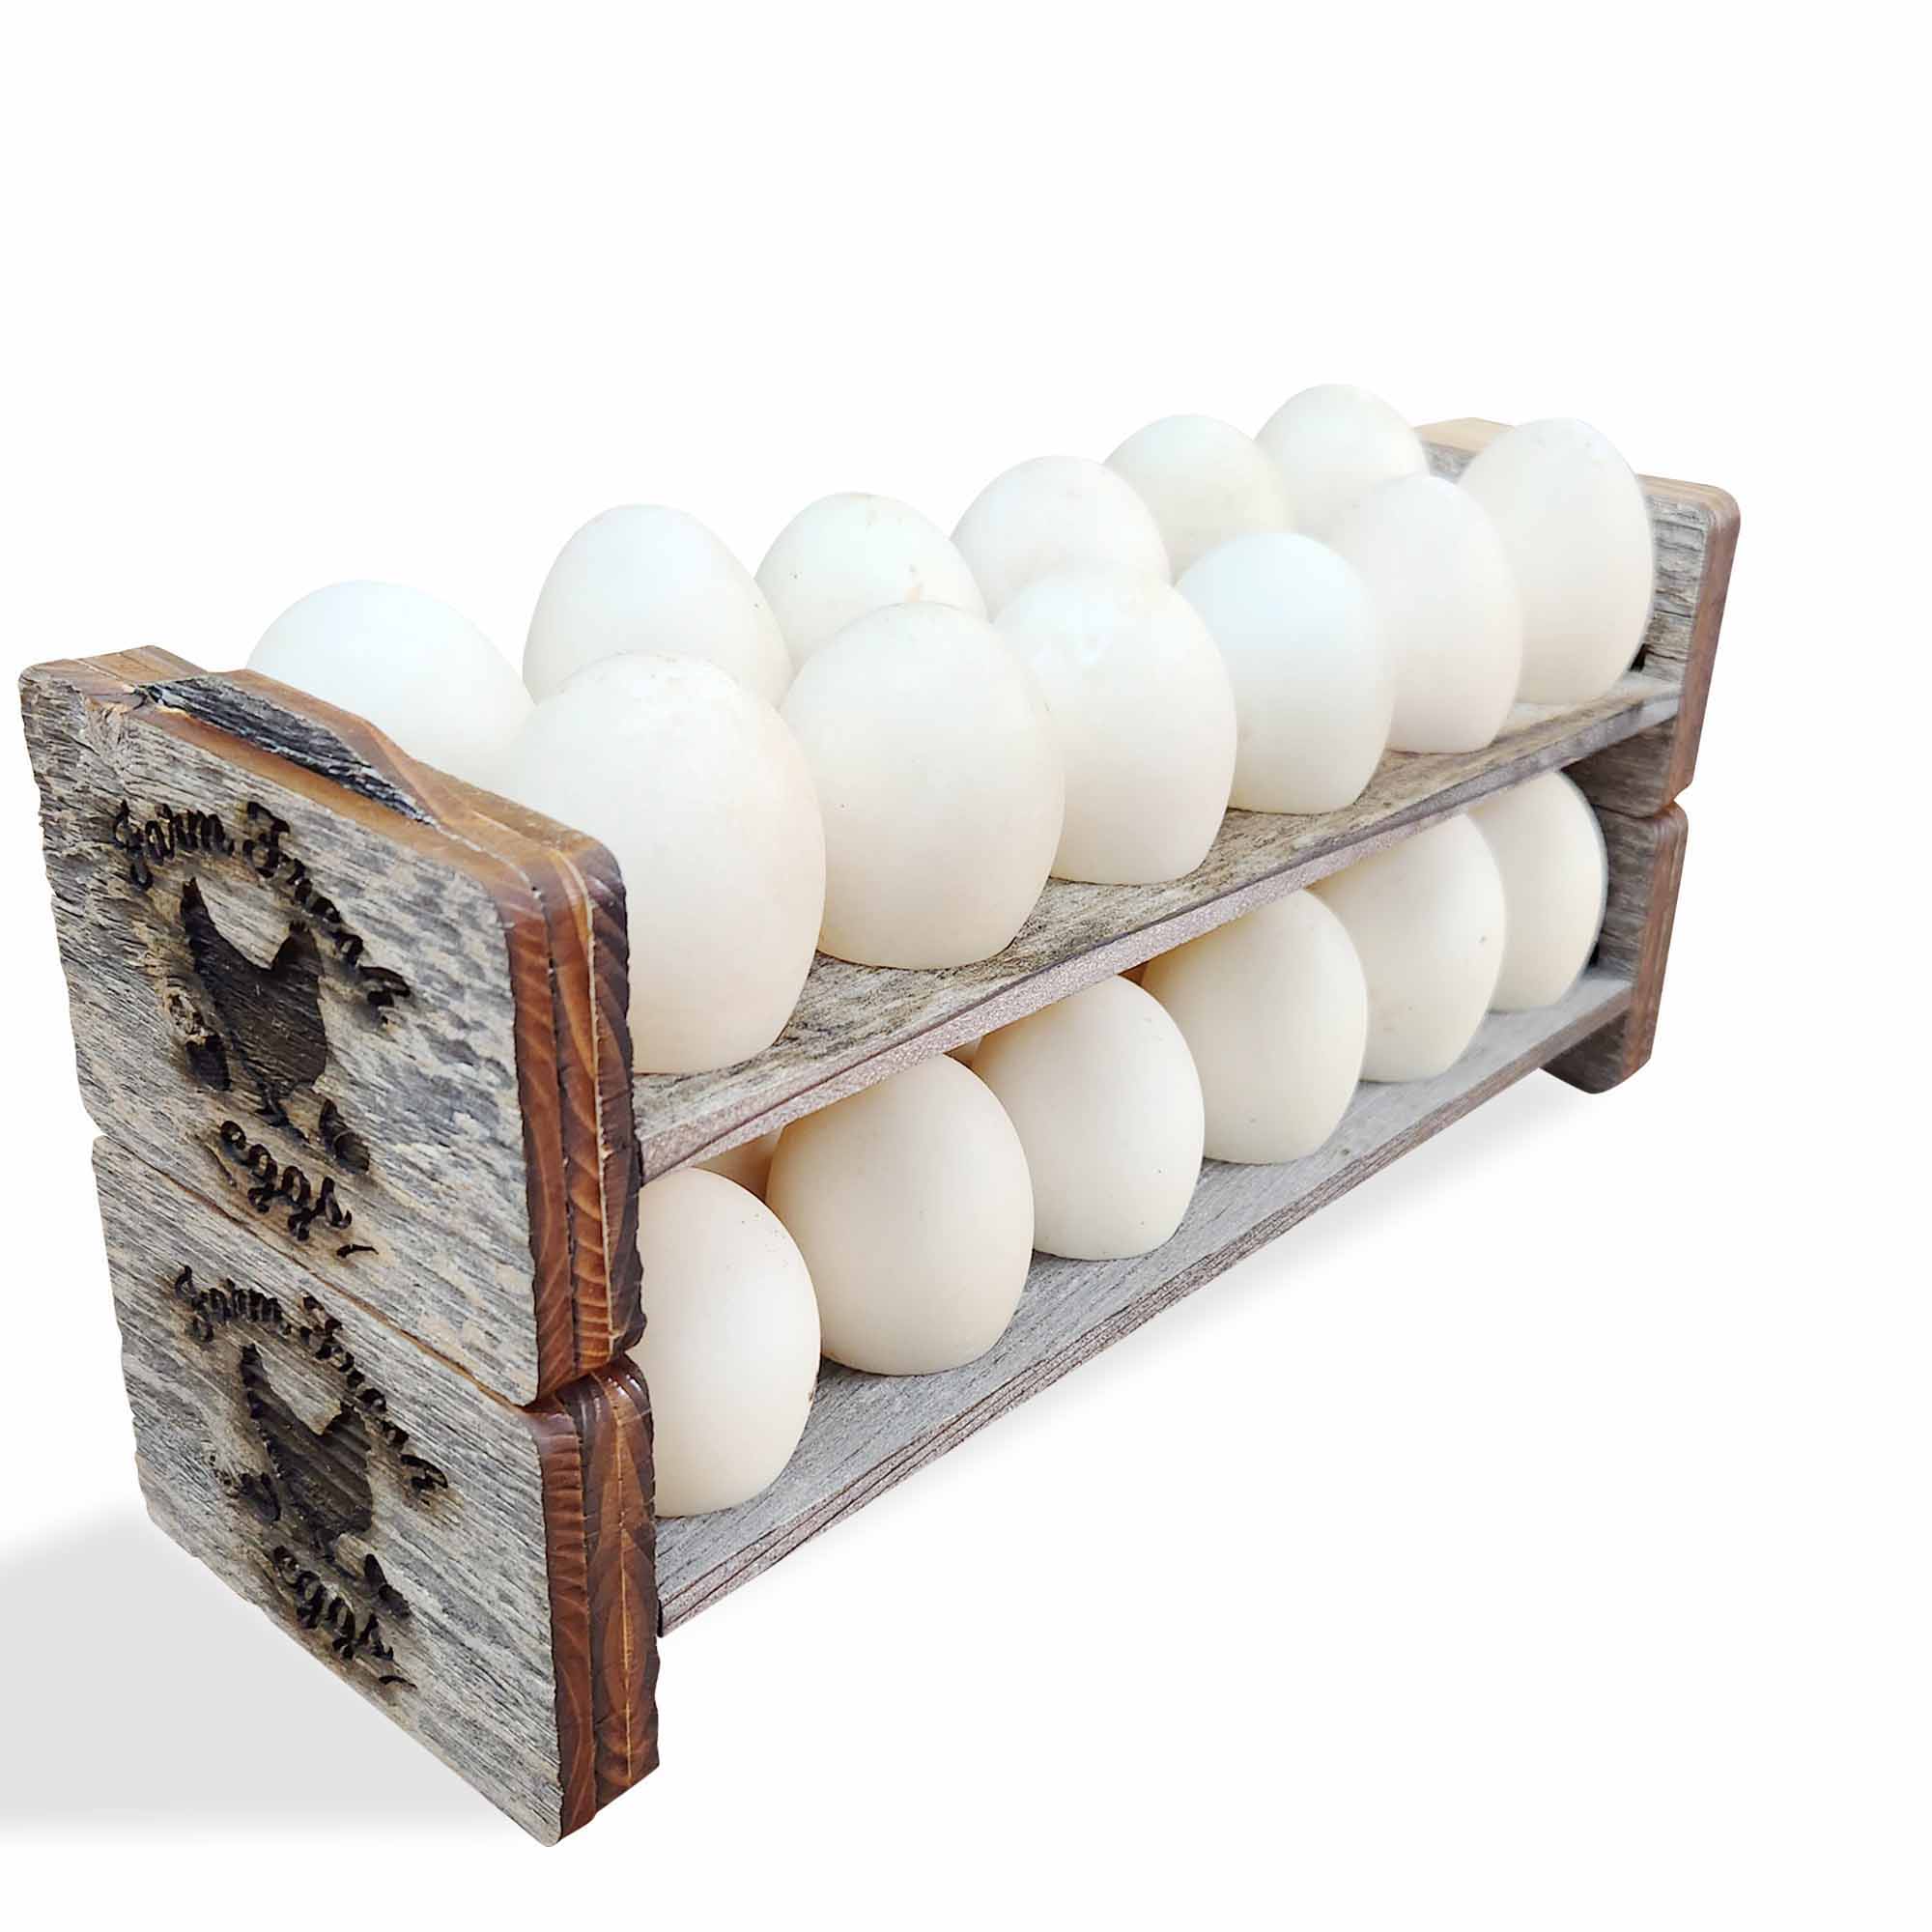 Egg Holder for Counter , Egg Holder Countertop , Egg Holder